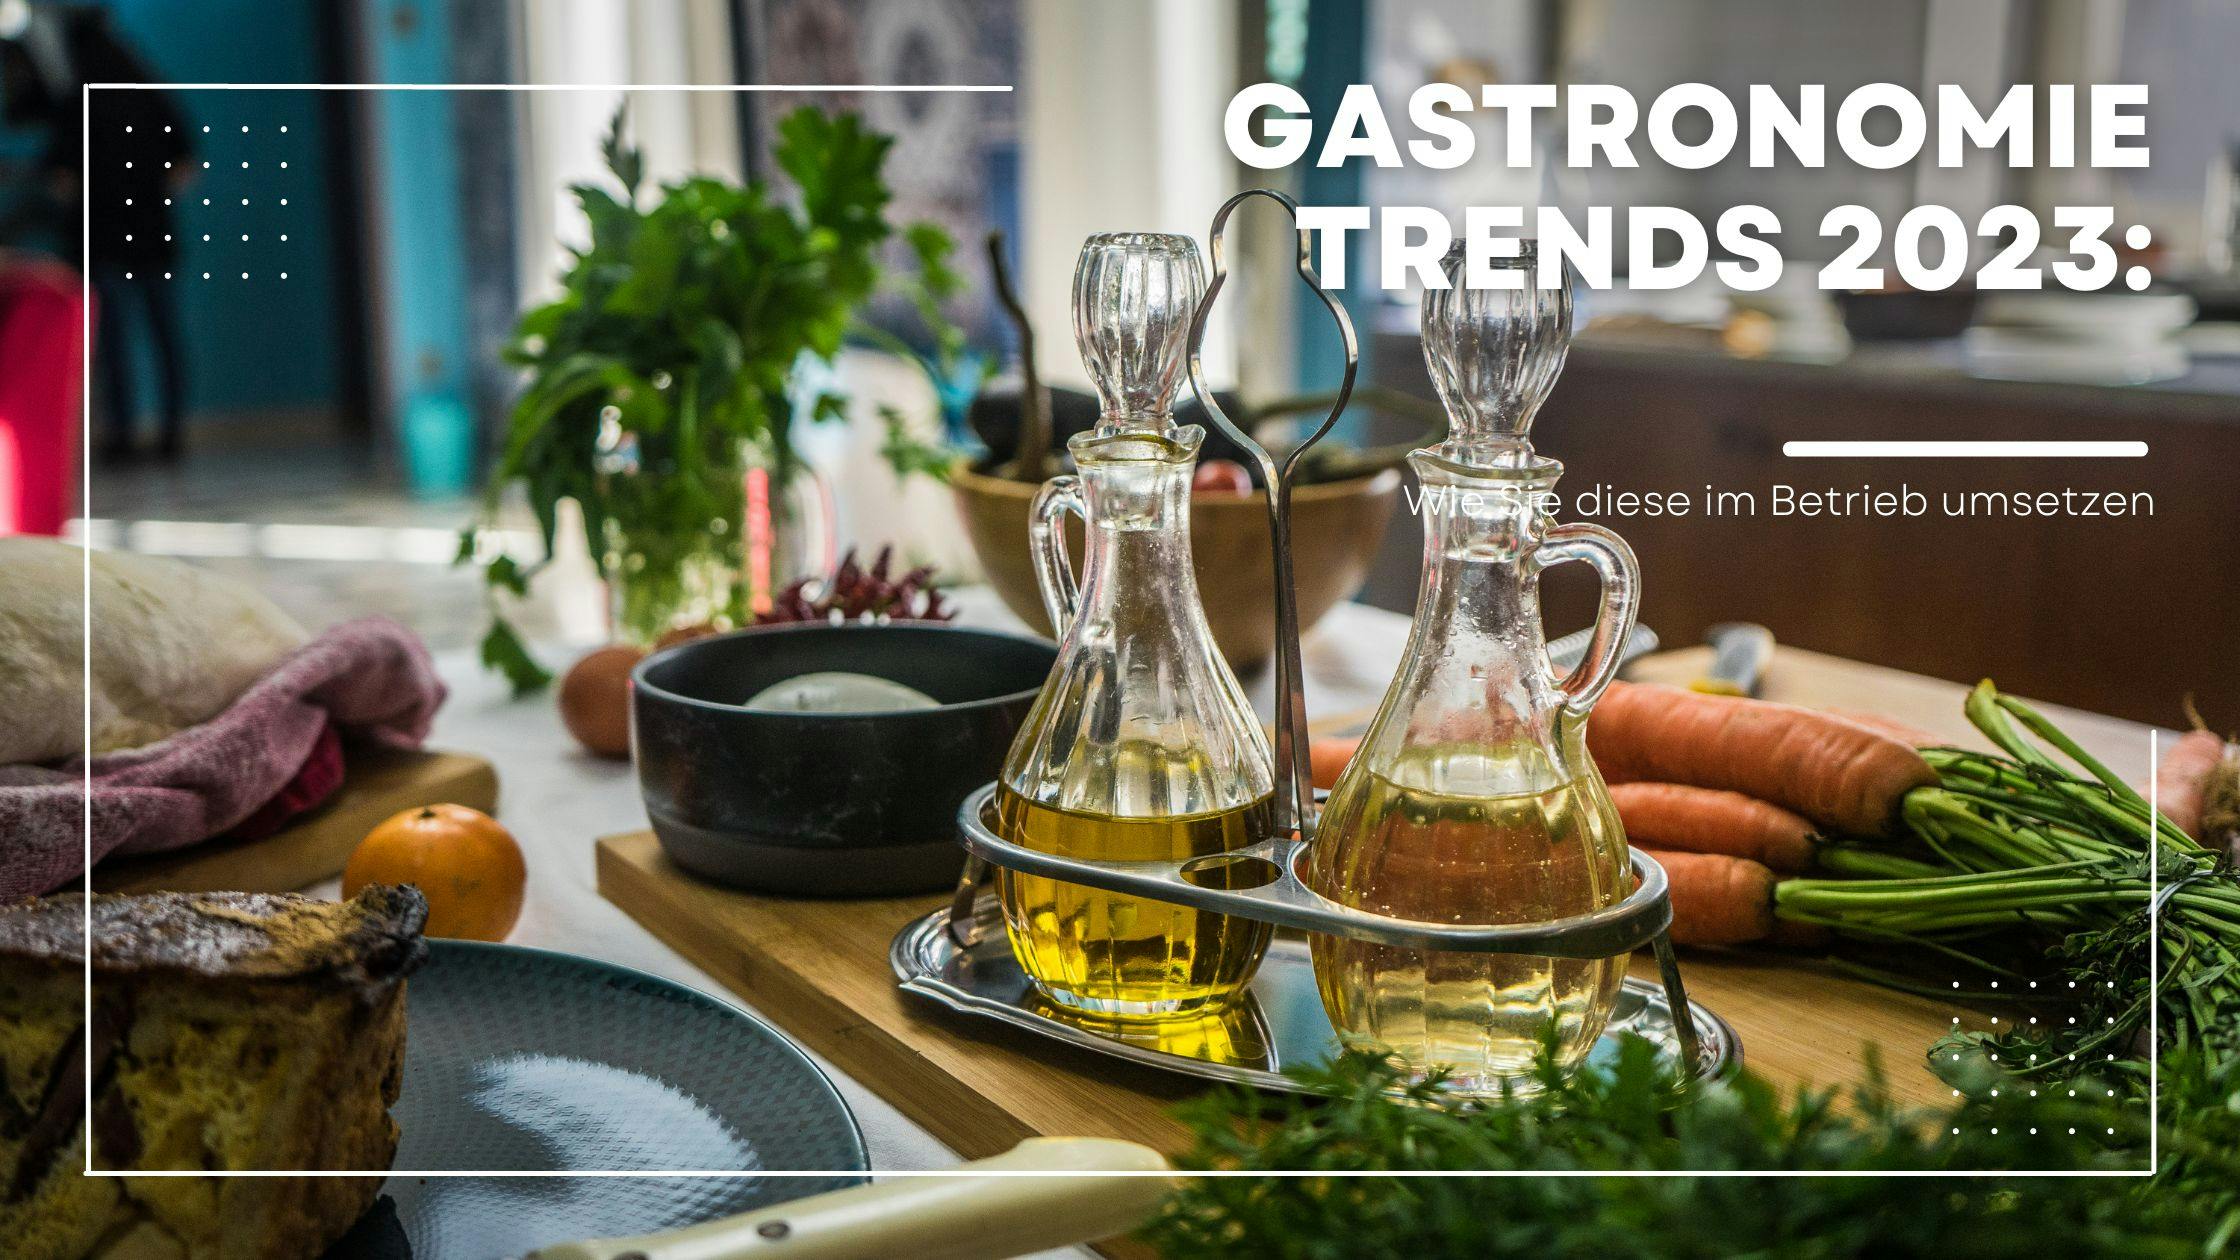 Gastronomie Trends 2023: Wie Sie diese im Betrieb umsetzen